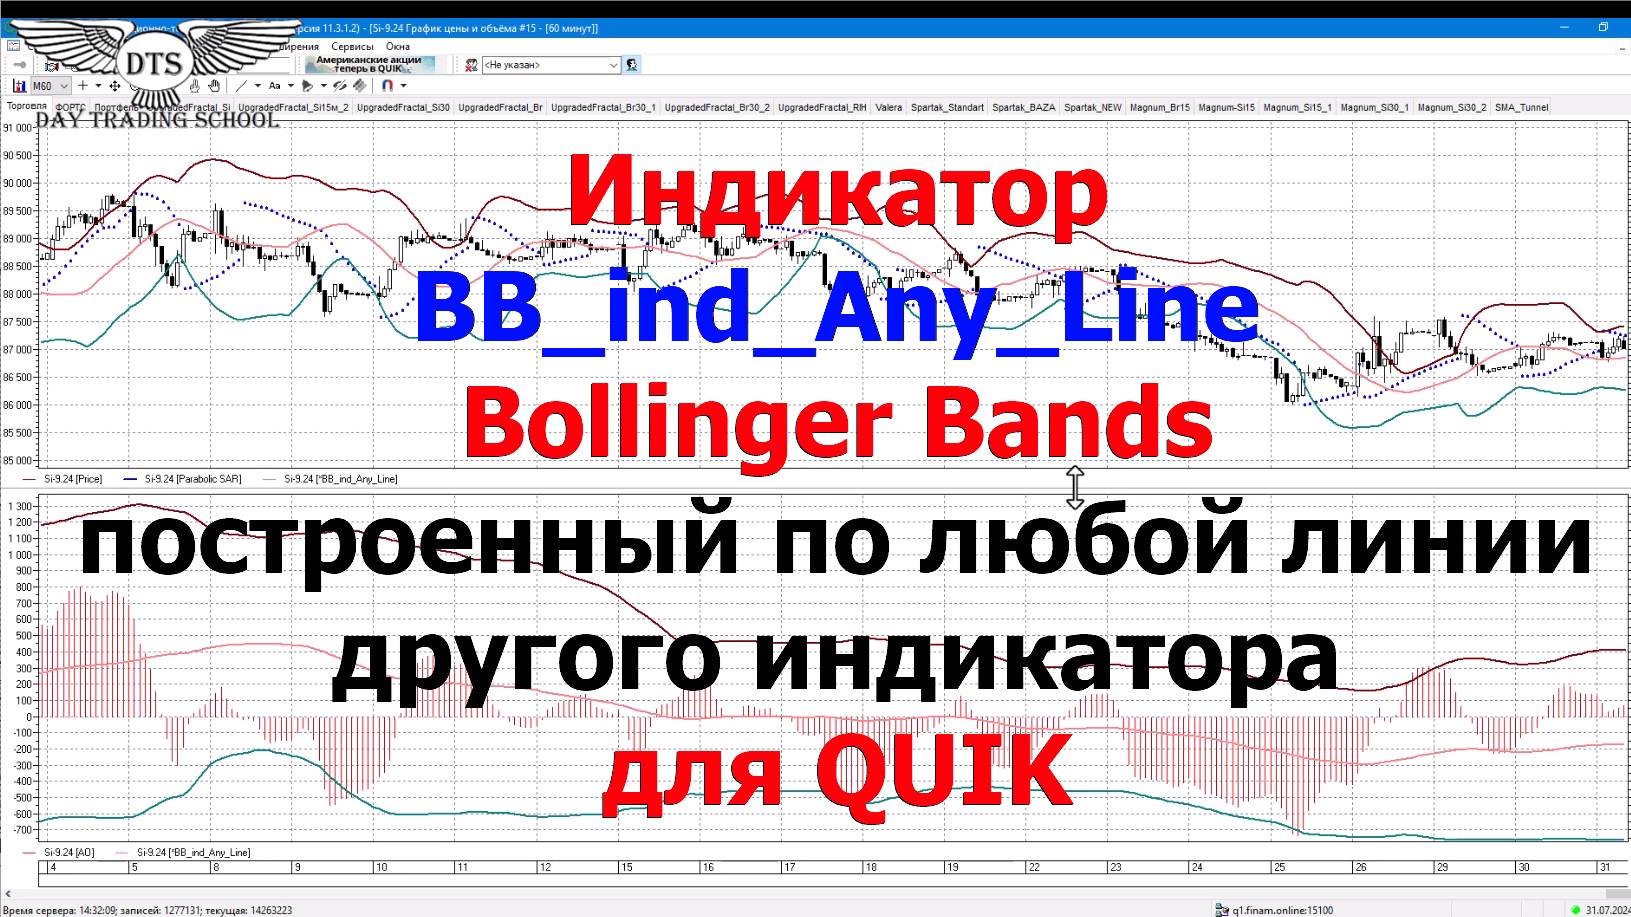 Индикатор Bollinger Bands построенный по другому индикатору в QUIK